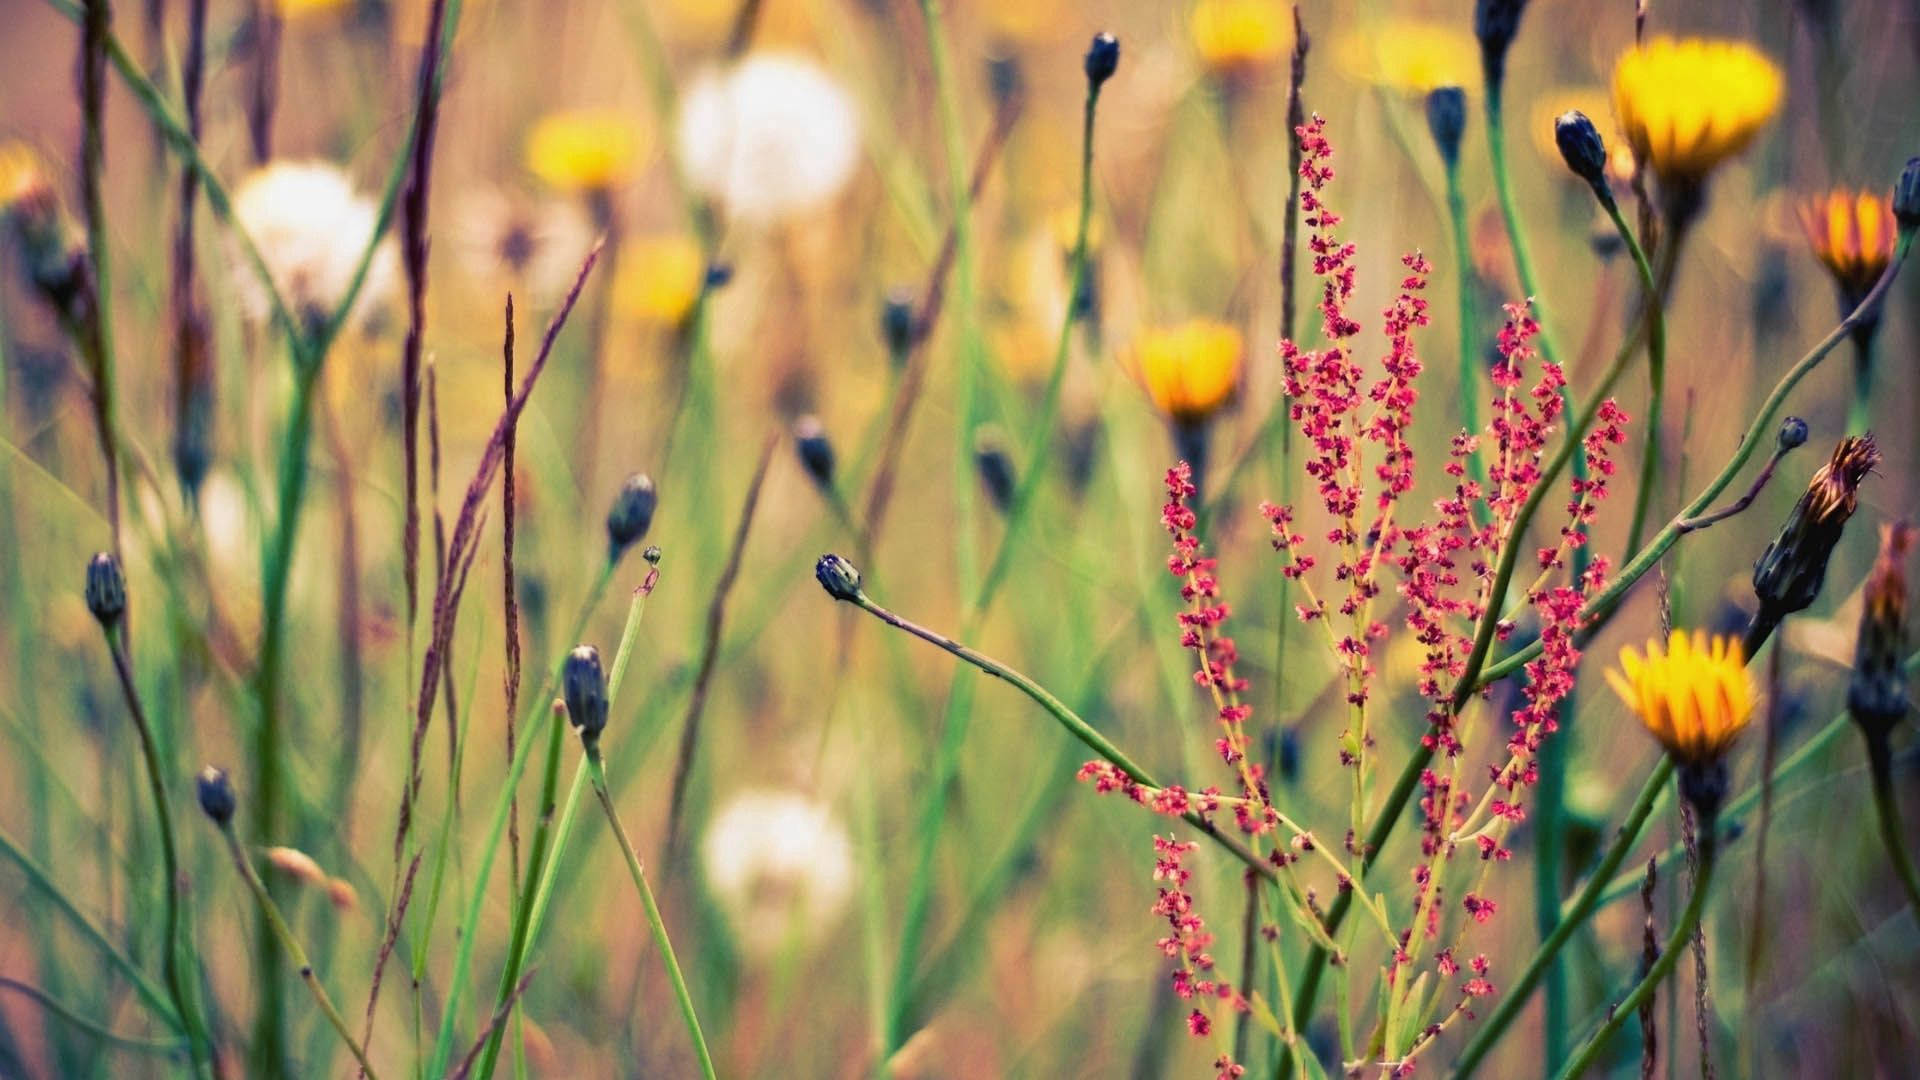 Wild Grass Flower Background